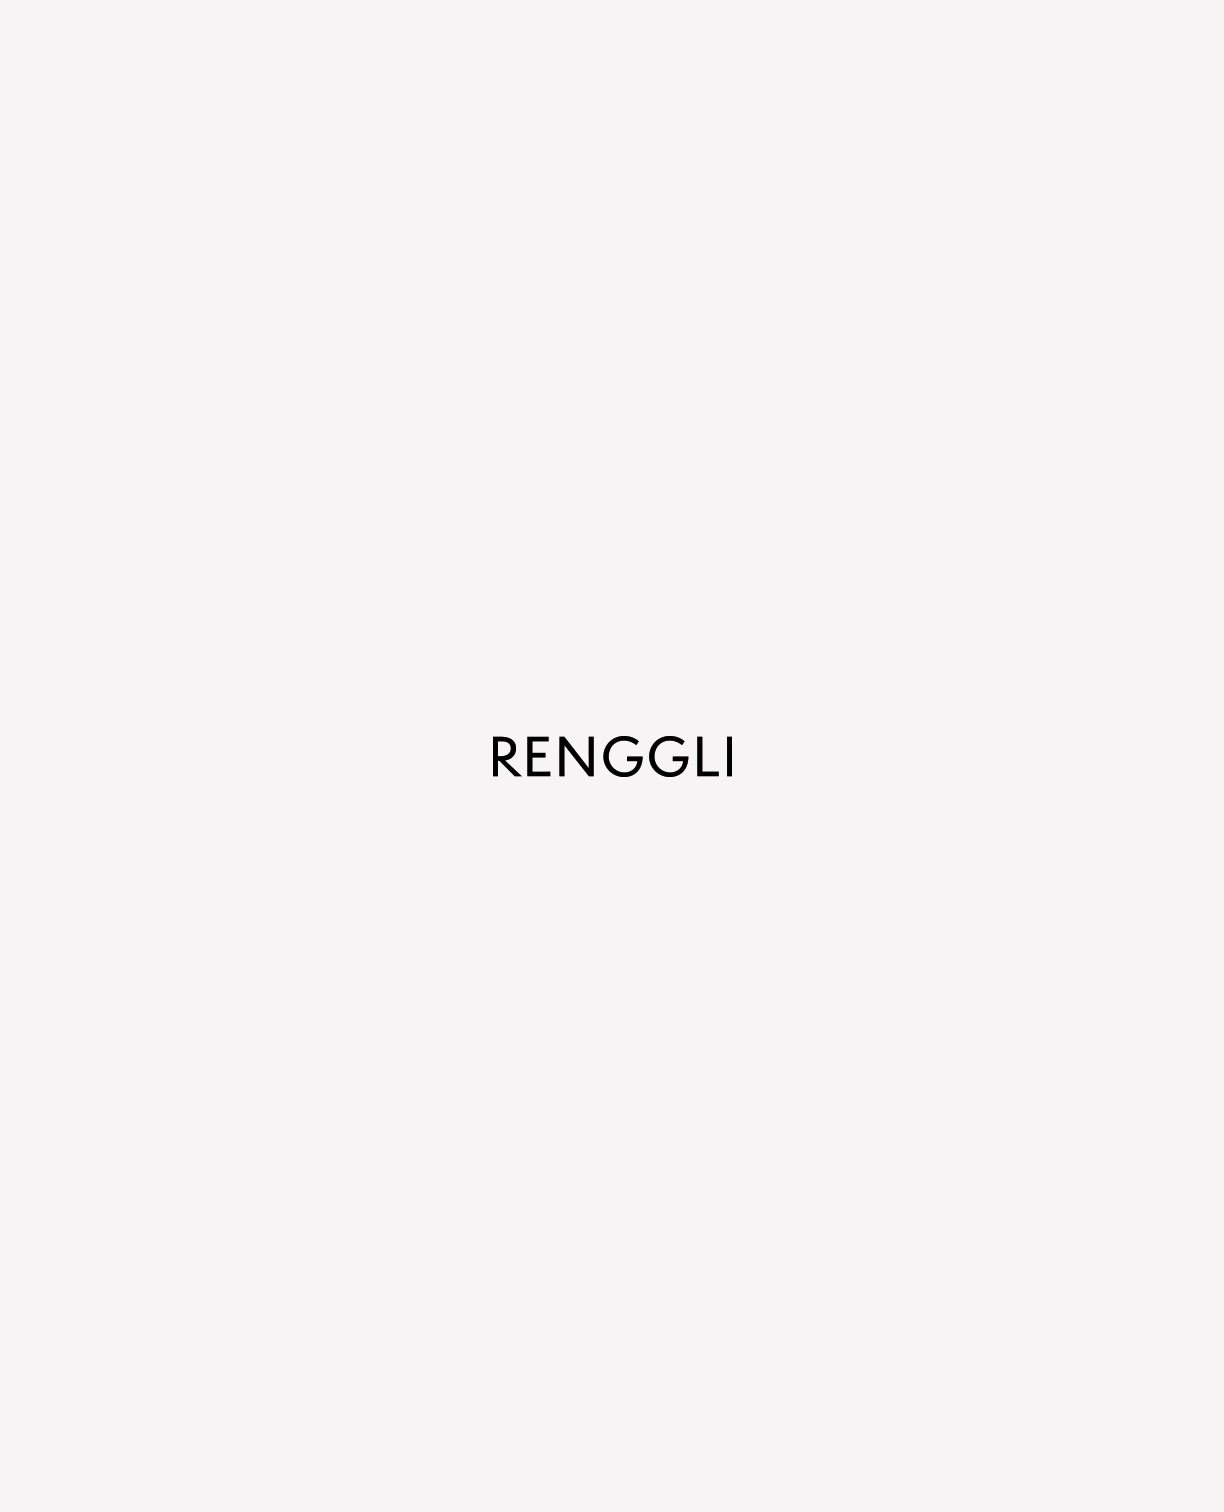 Renggli_identity